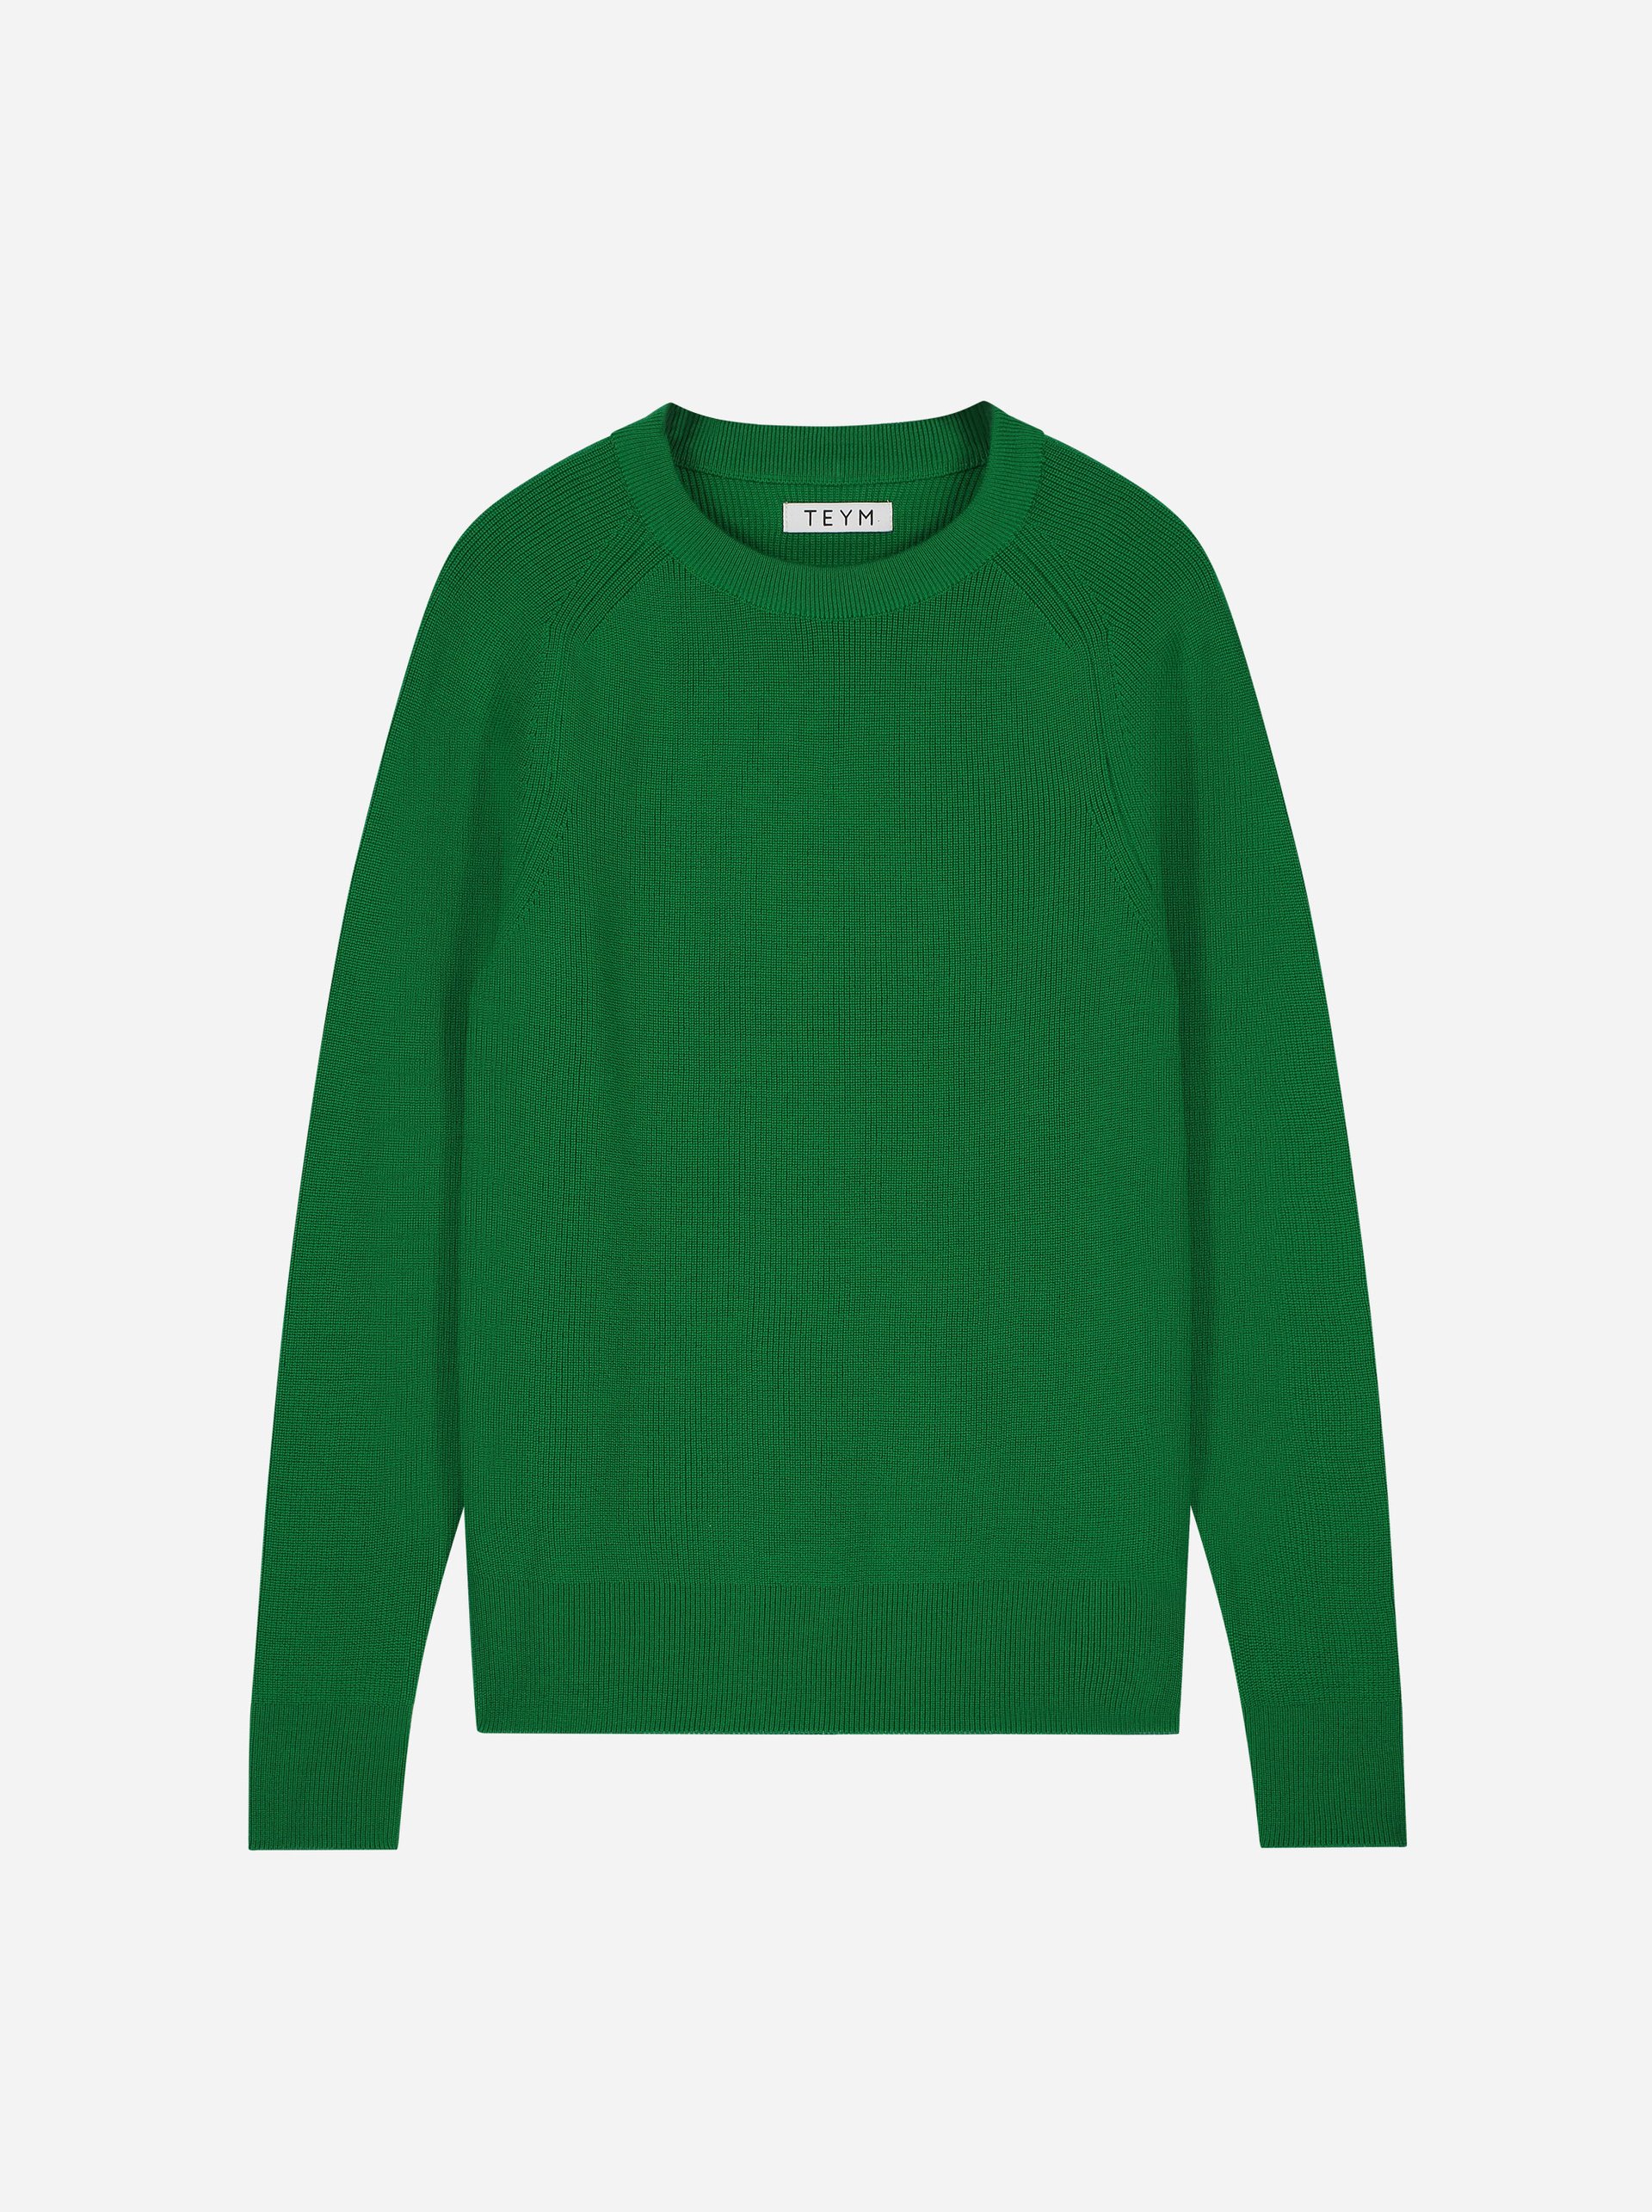 Teym - The Merino Sweater - Men - Bright Green - 4